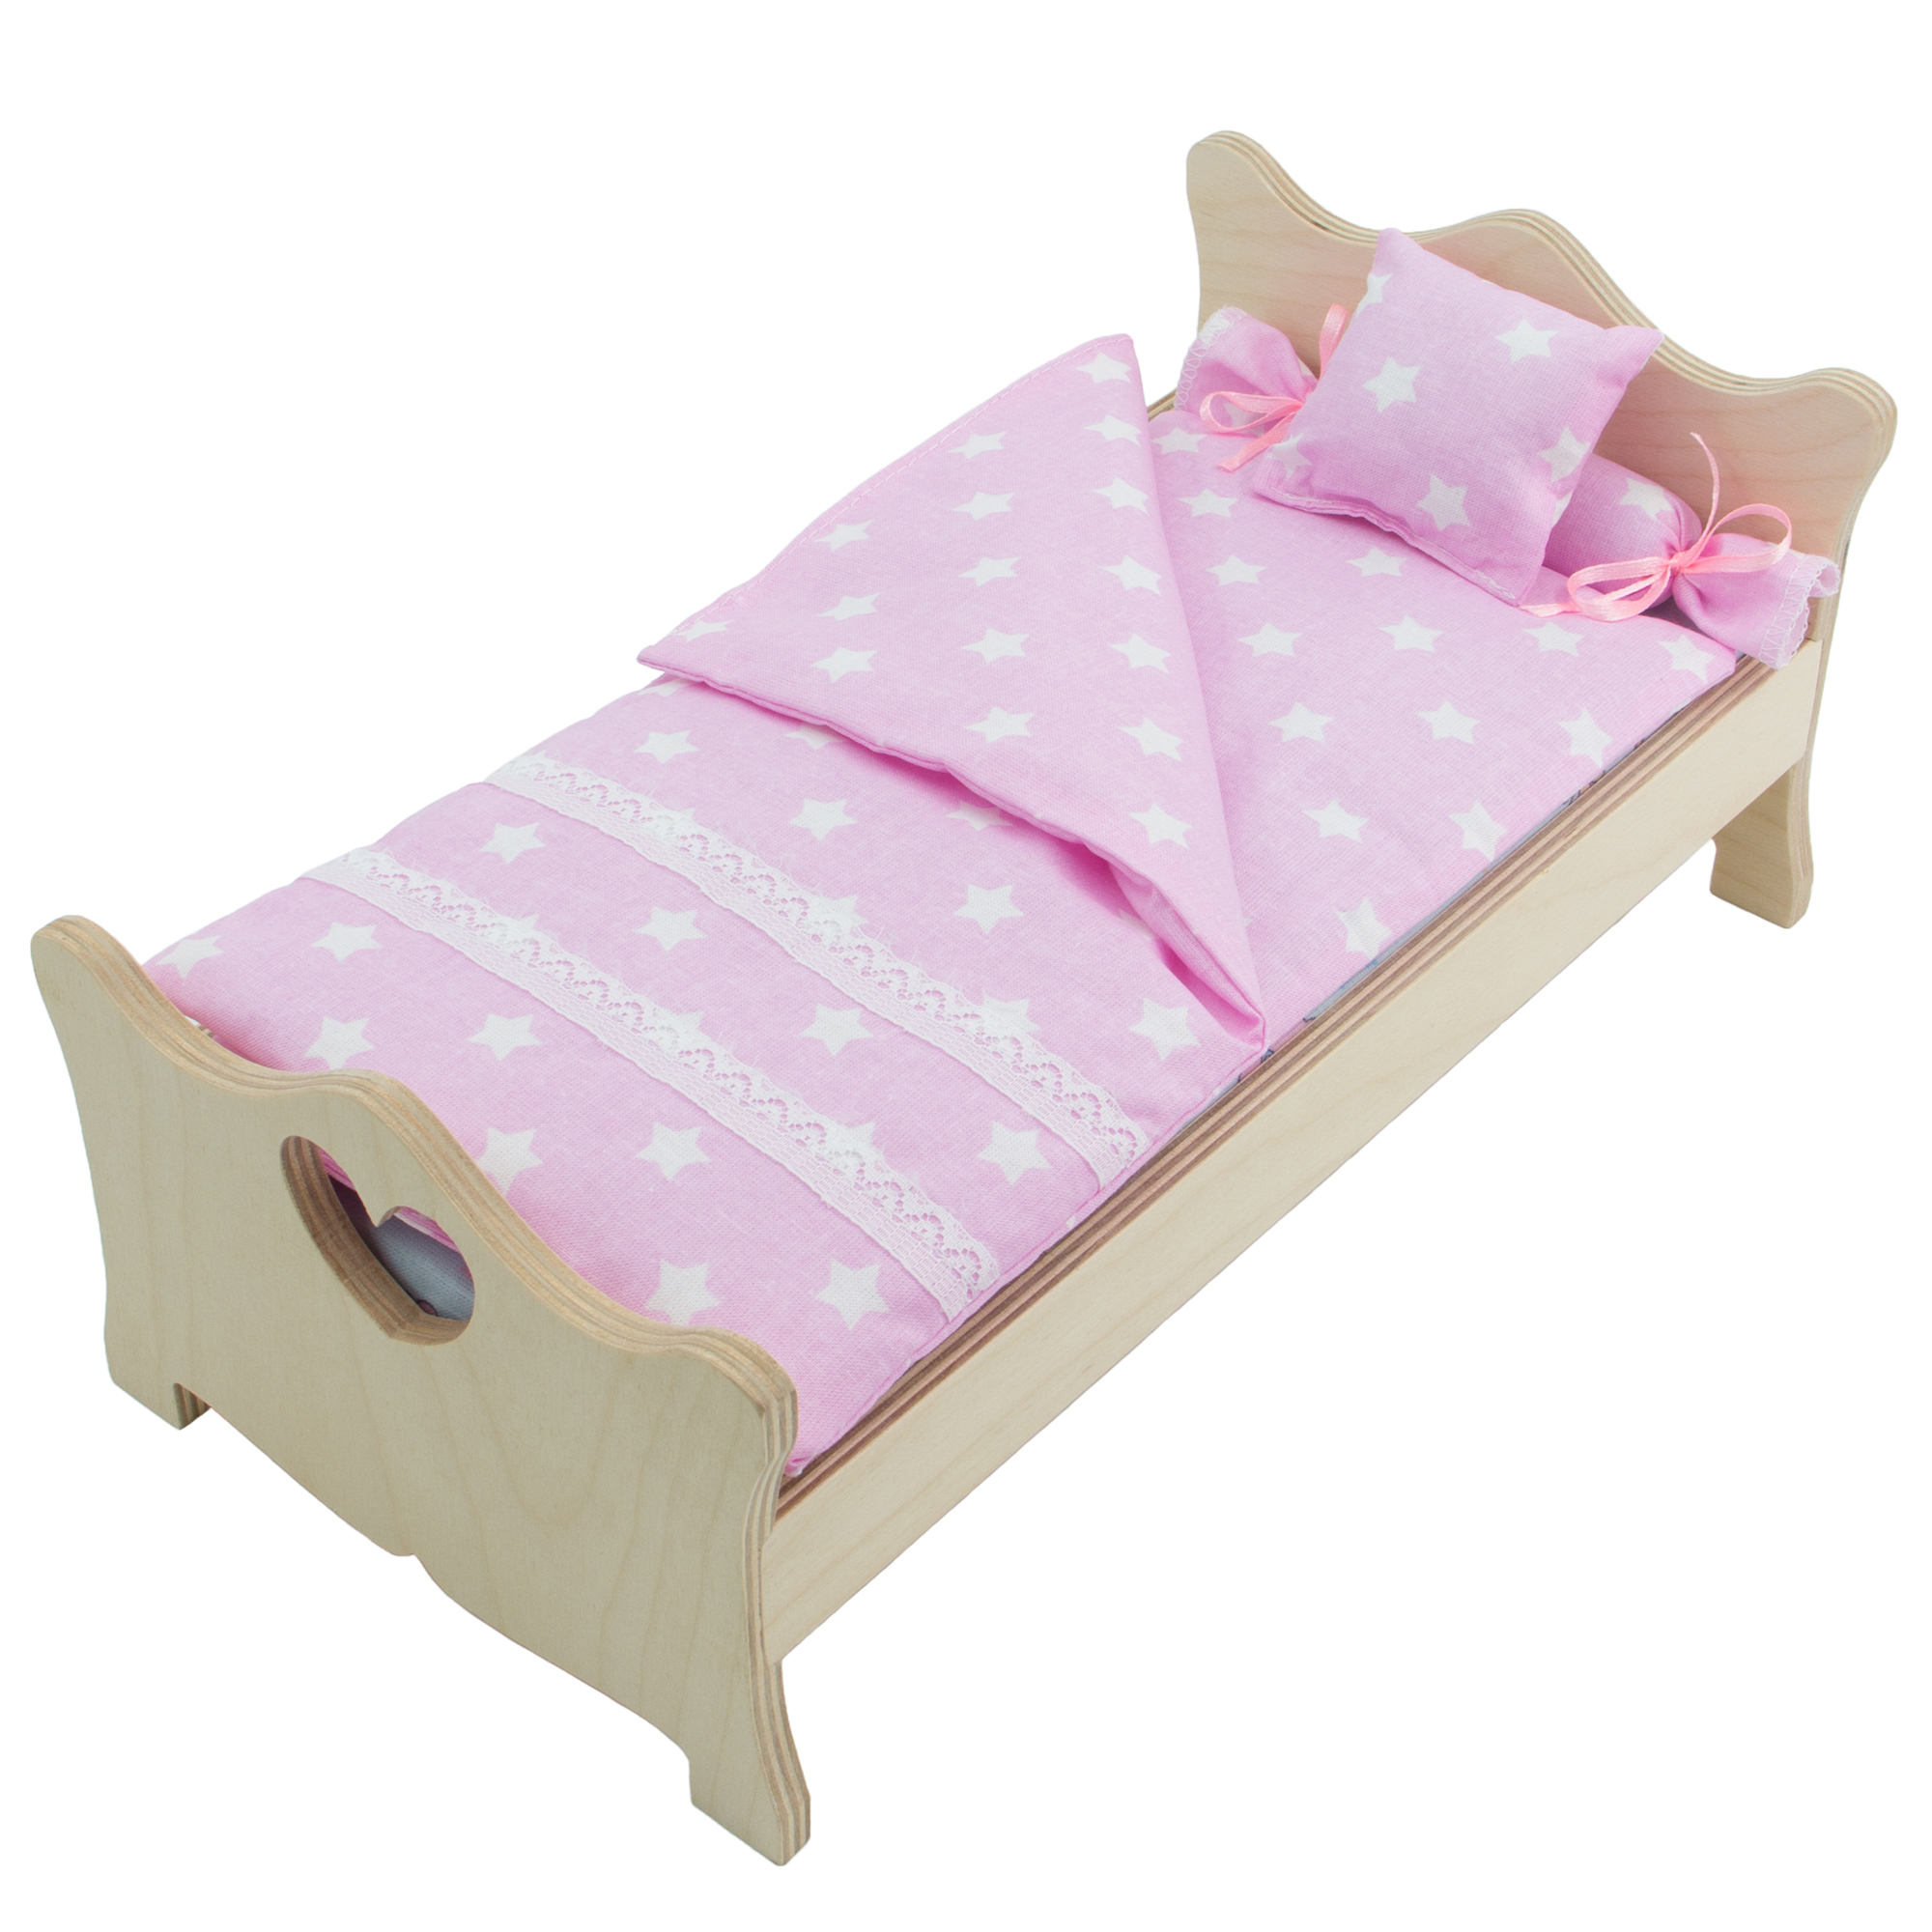 Комлпект постельного белья Модница для куклы 29 см светло-розовый 2002светло-розовый - фото 4